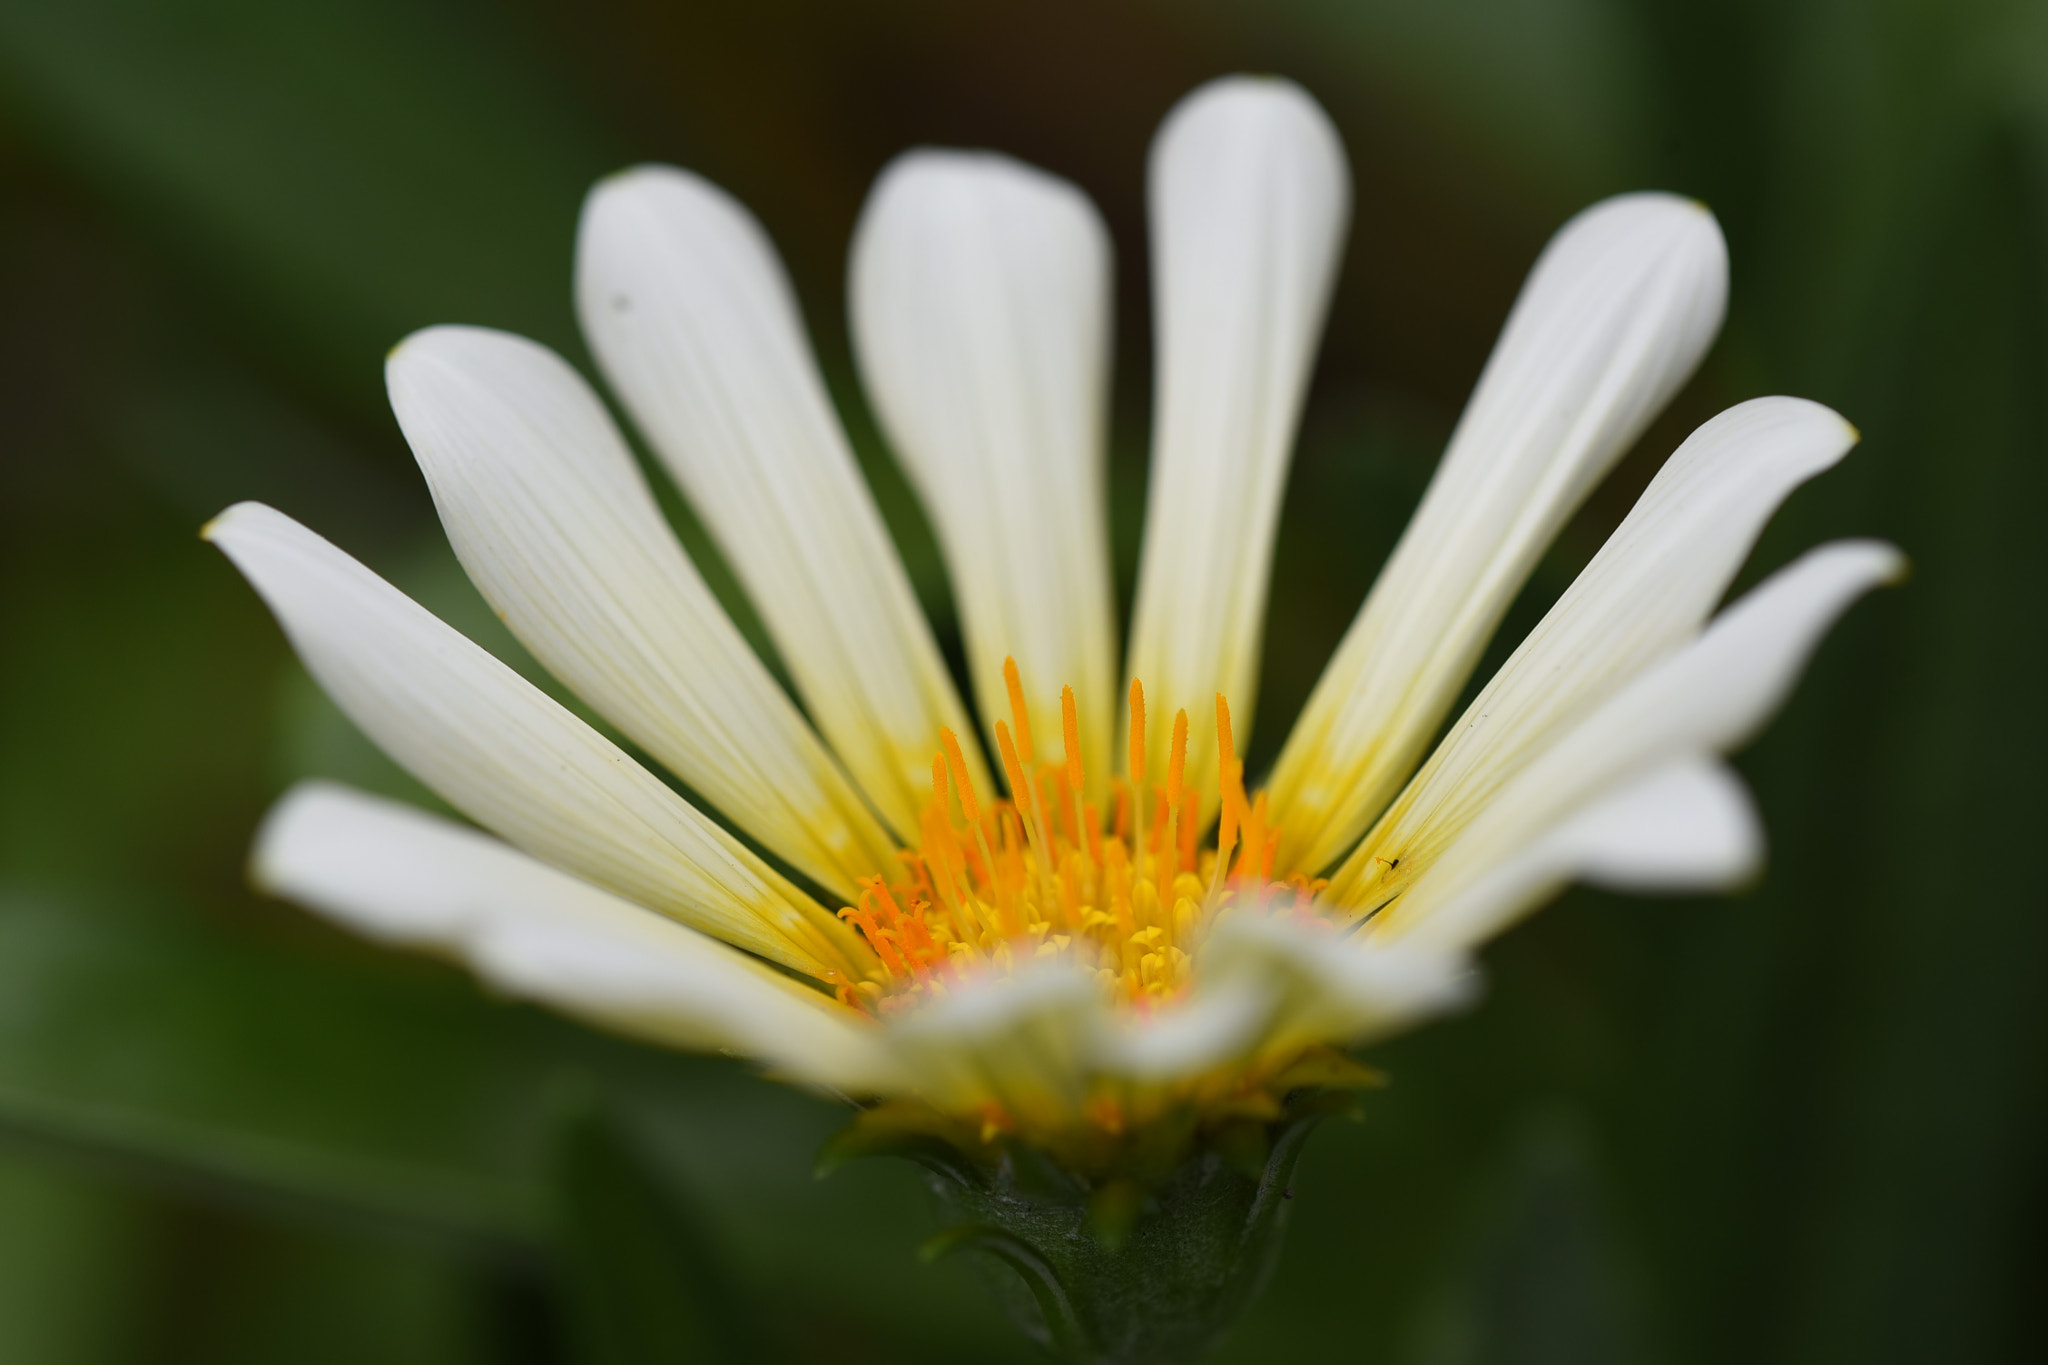 Nikon D750 sample photo. Daisy flower photography